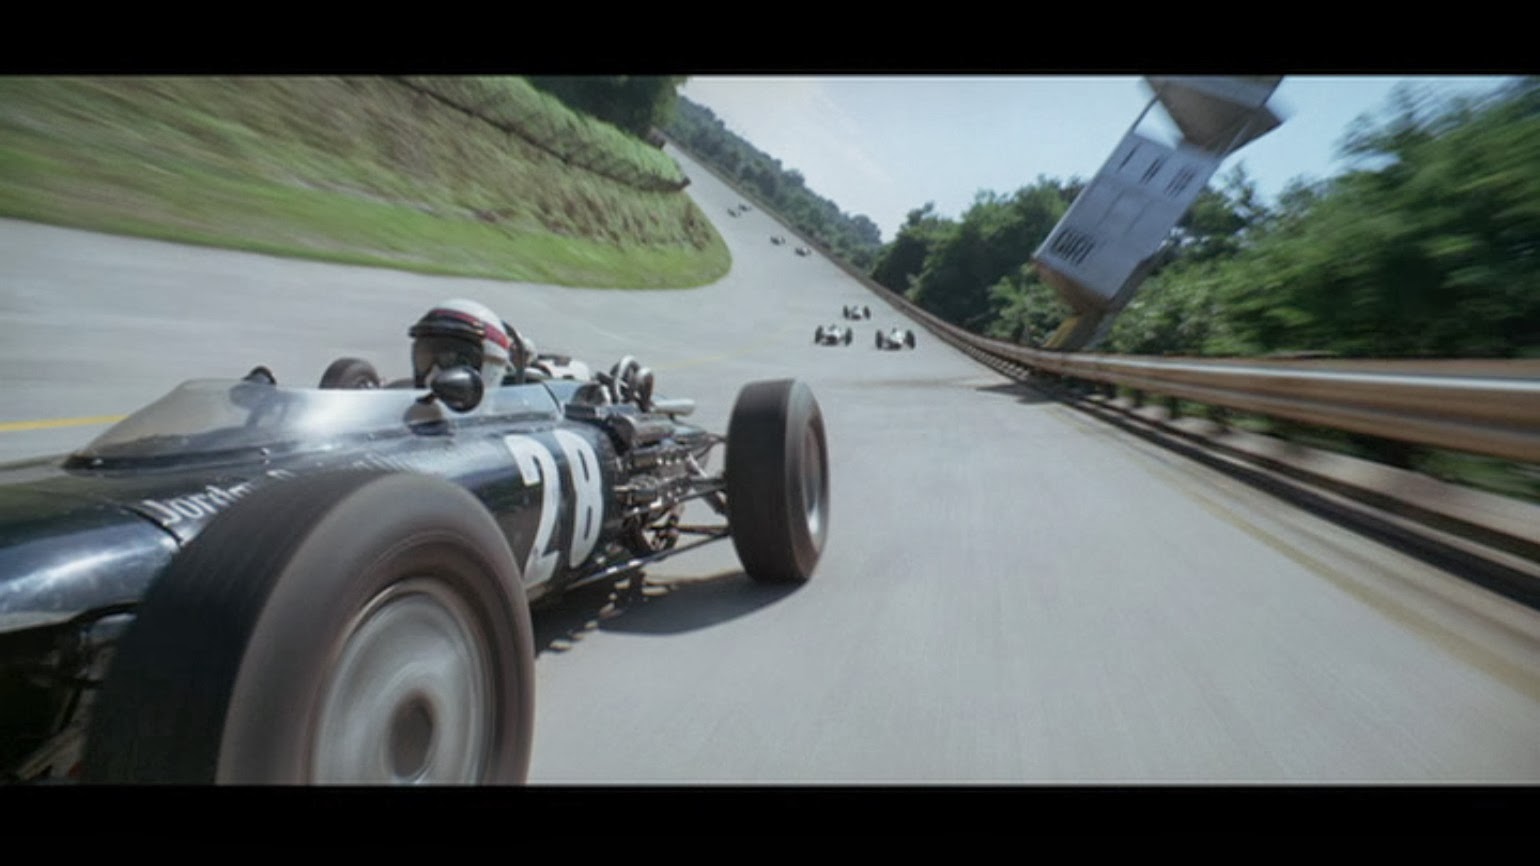 Amazoncom: Grand Prix 1966: James Garner, Eva Marie